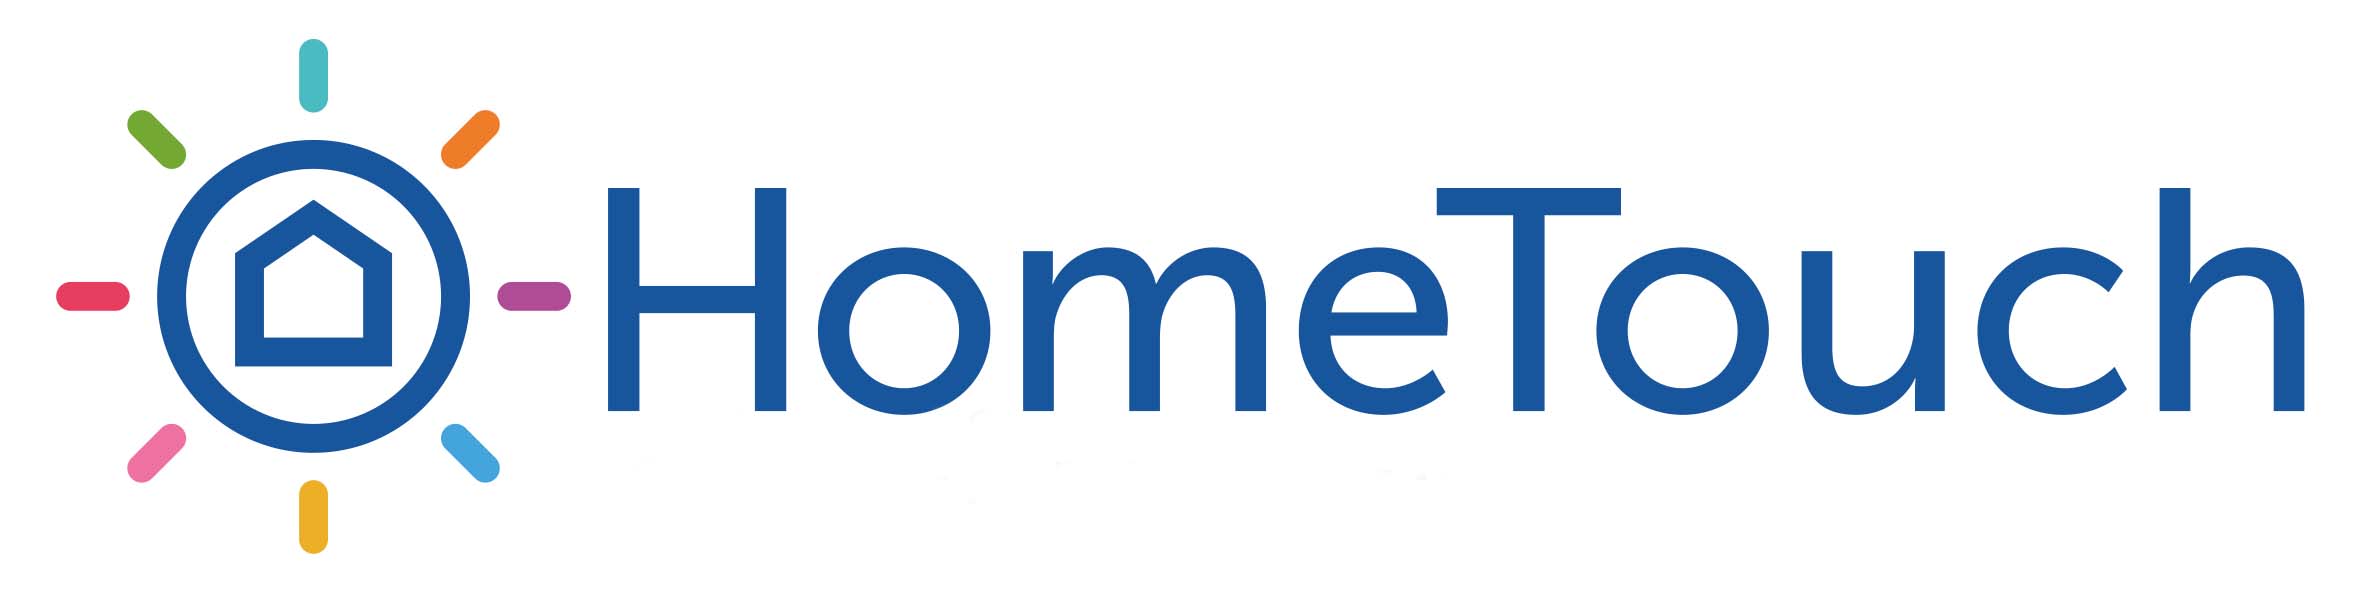 HomeTouch_Concept_Full_Logo-1.jpg